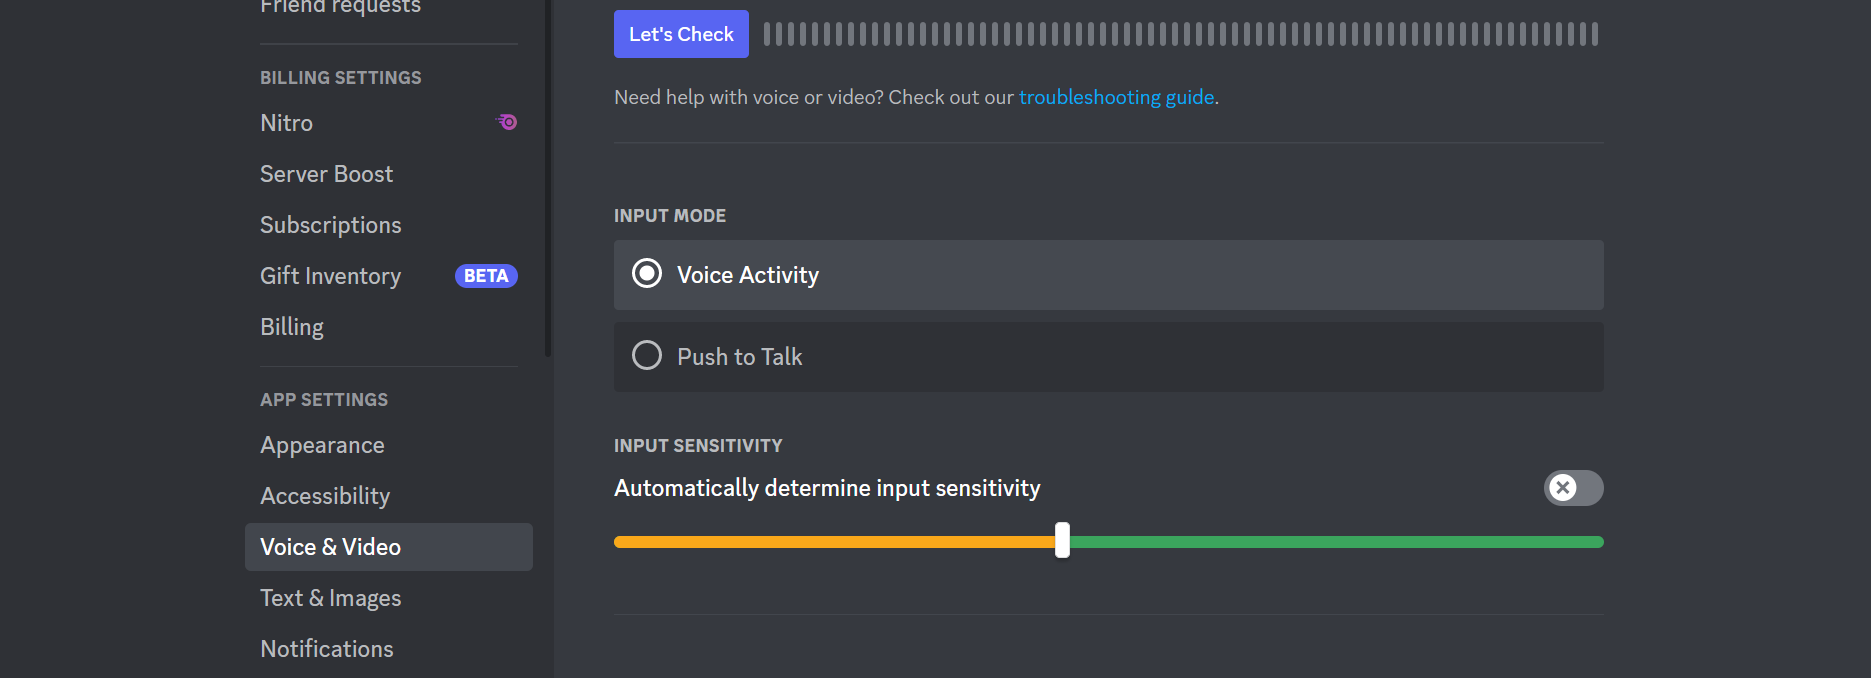 Voice Activity option